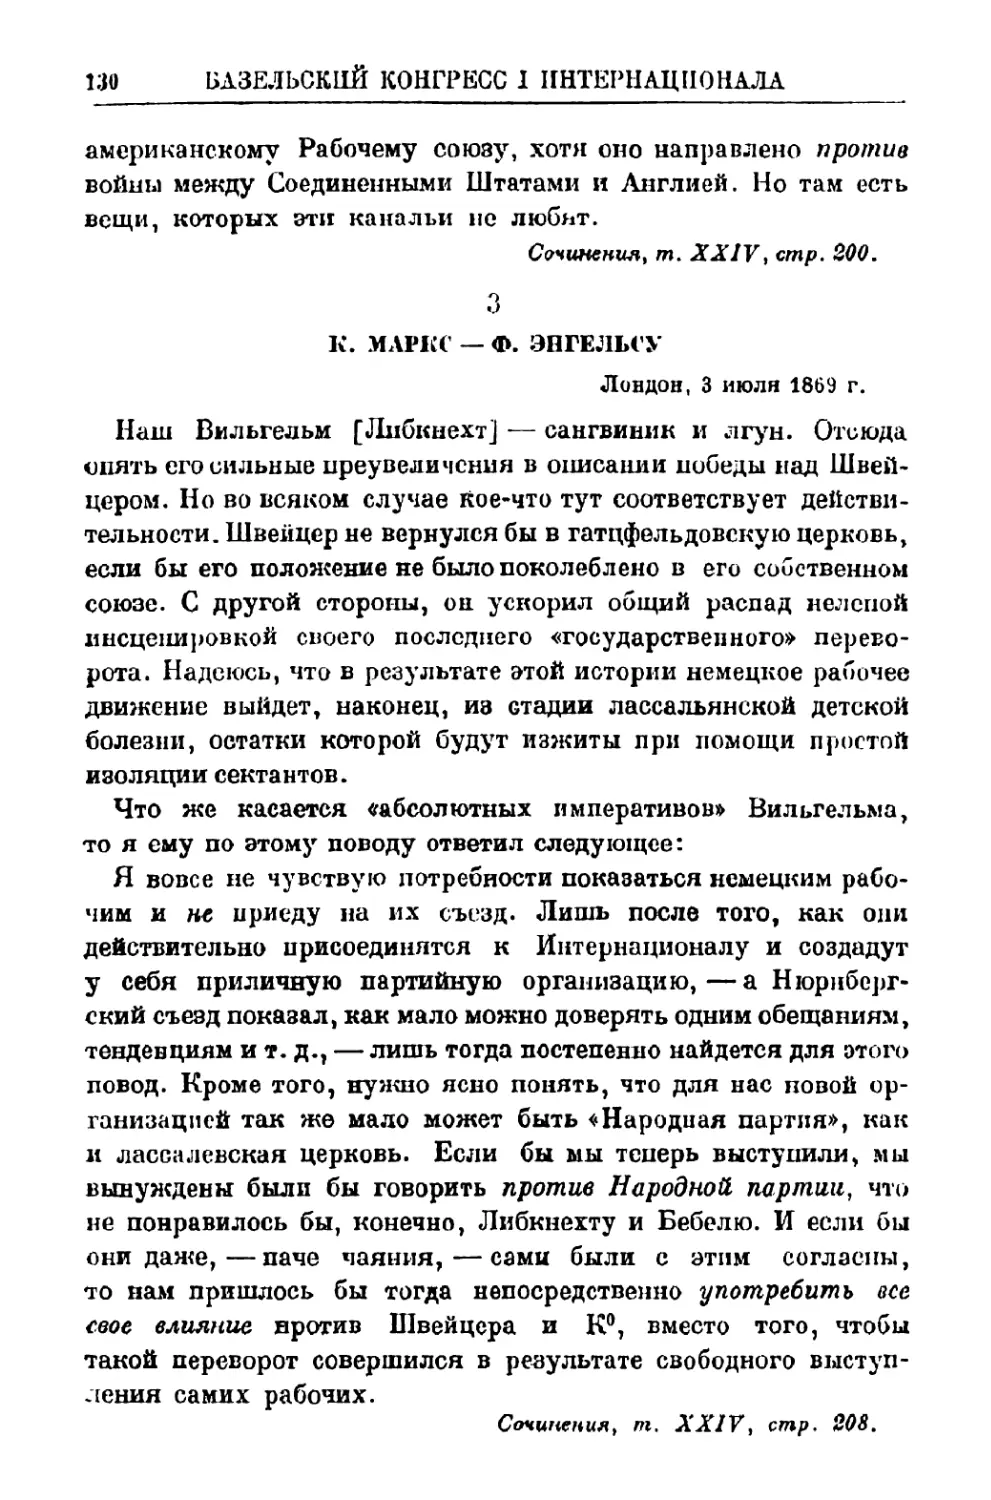 3. К. Маркс — Ф. Энгельсу, 3 июля 1869 г